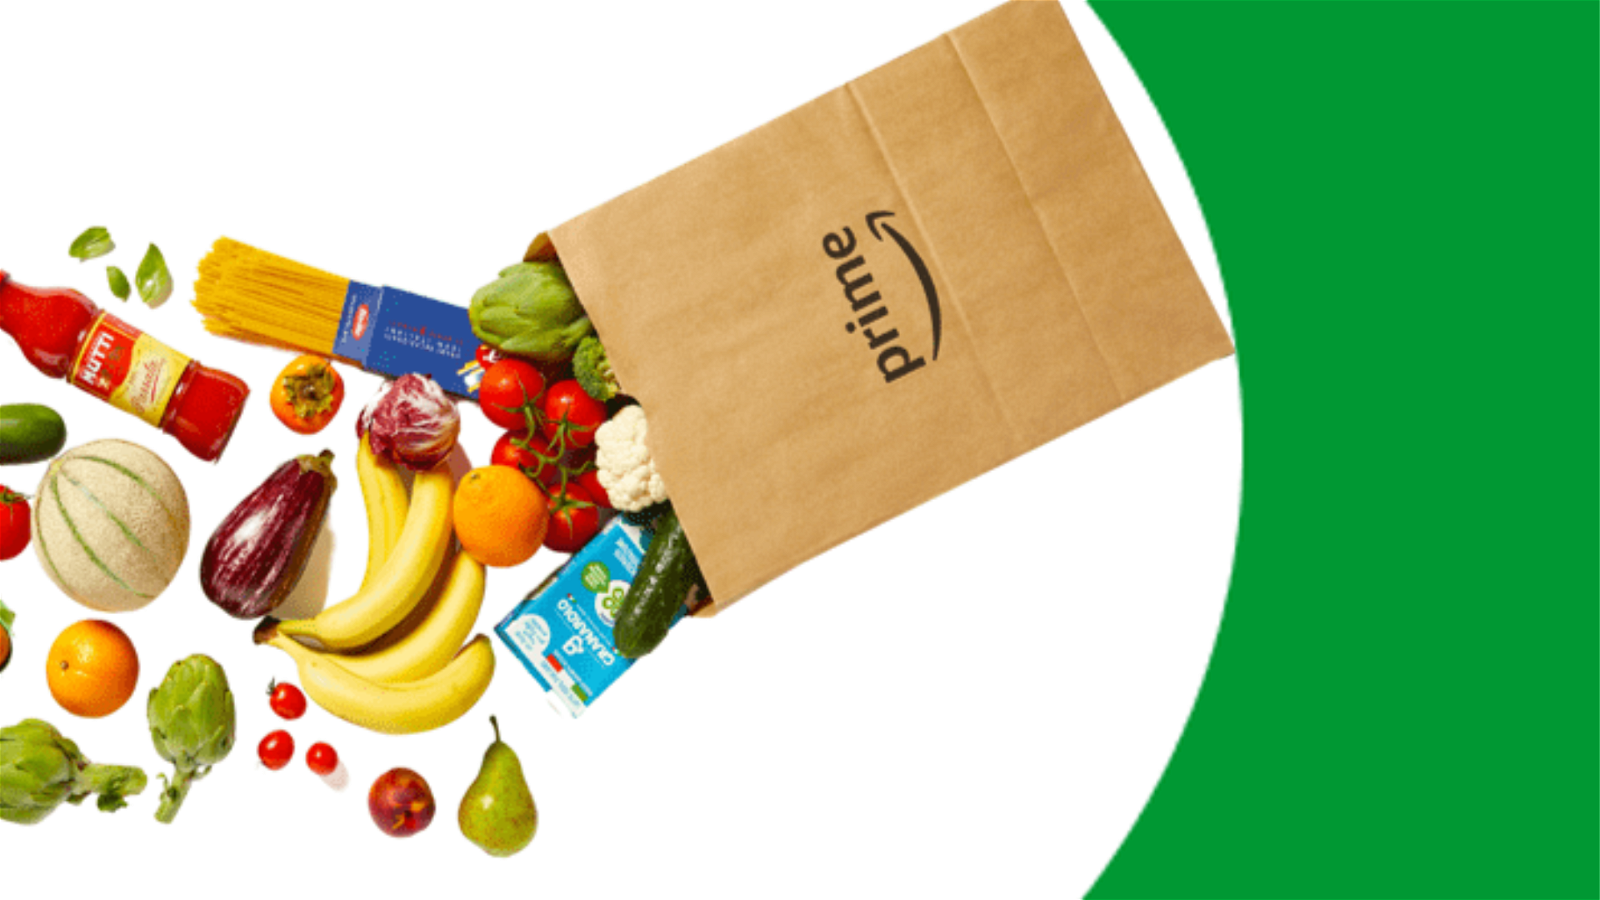 Immagine di Offerte di Primavera Amazon: la spesa come al supermercato in super sconto!